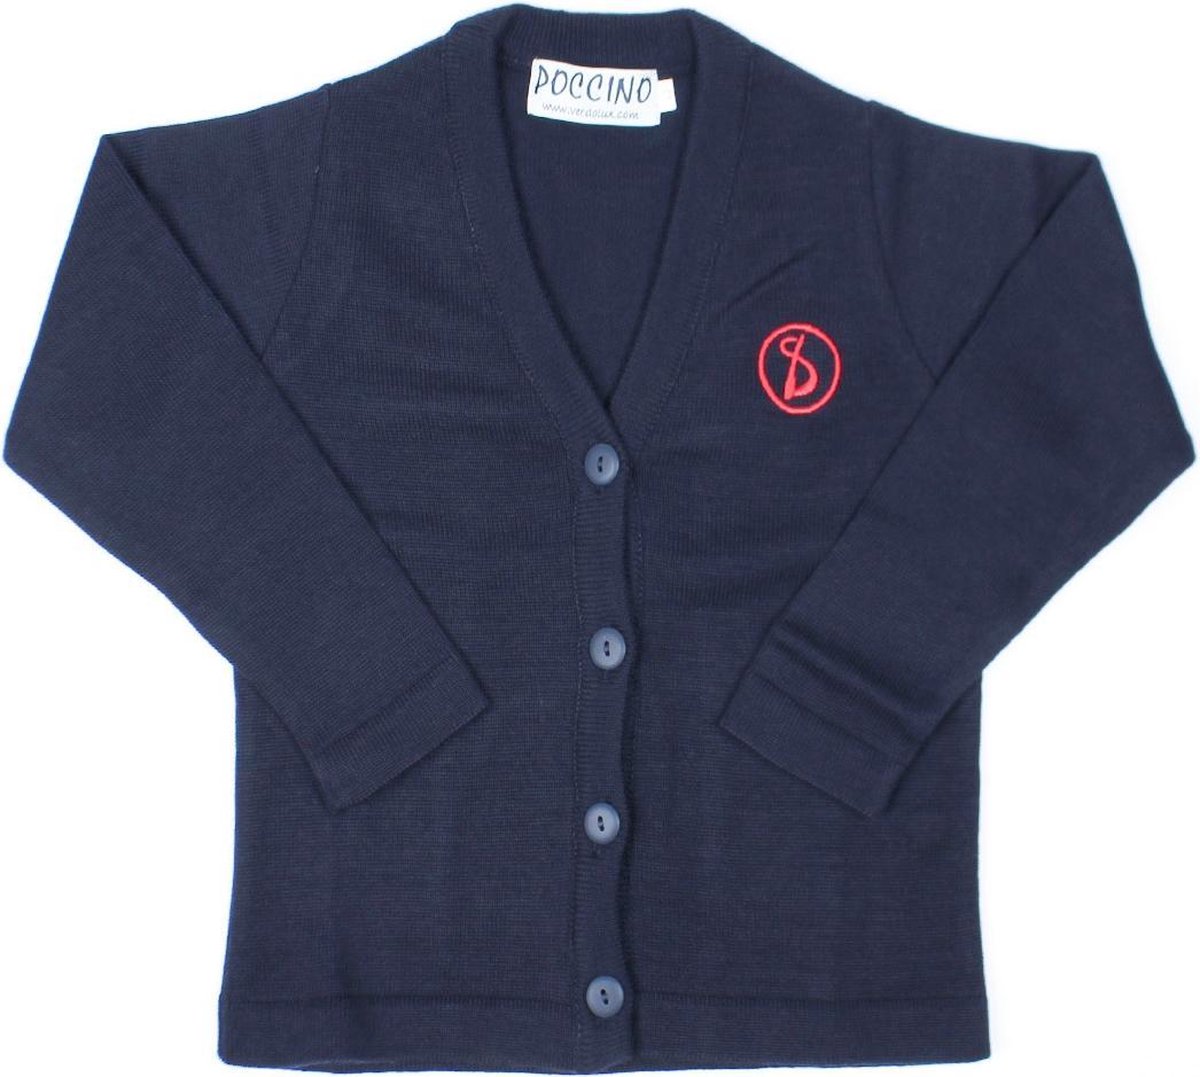 Sint-Ludgardis schooluniform - Vest meisje - Donkerblauw - Maat 6 jaar